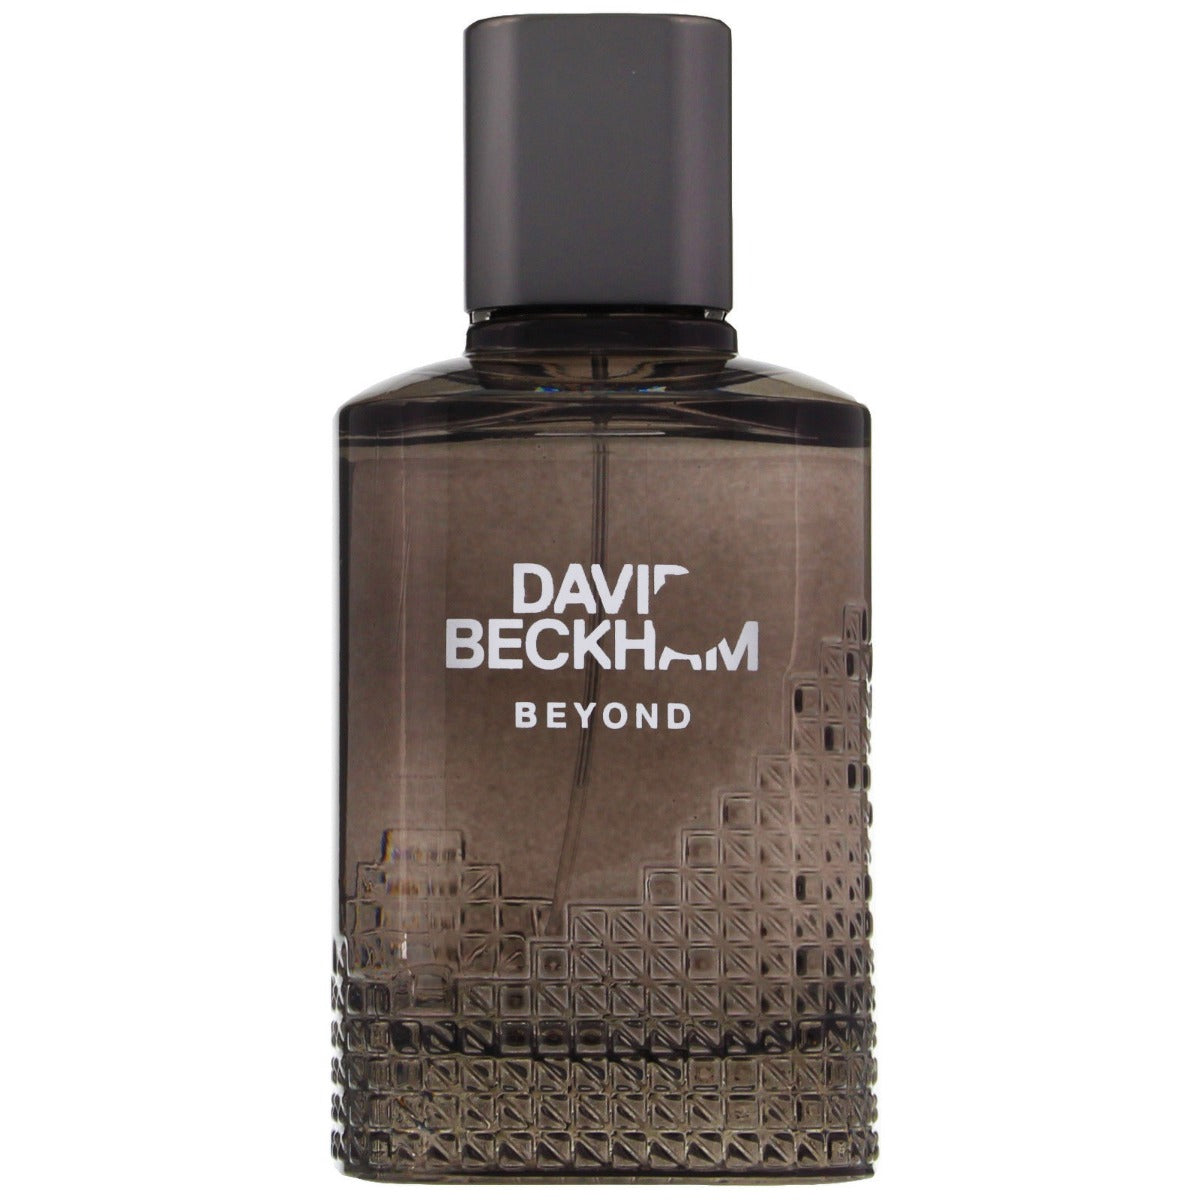 DAVID BECKHAM BEYOND FOR MEN EDT 90 ml - samawa perfumes 